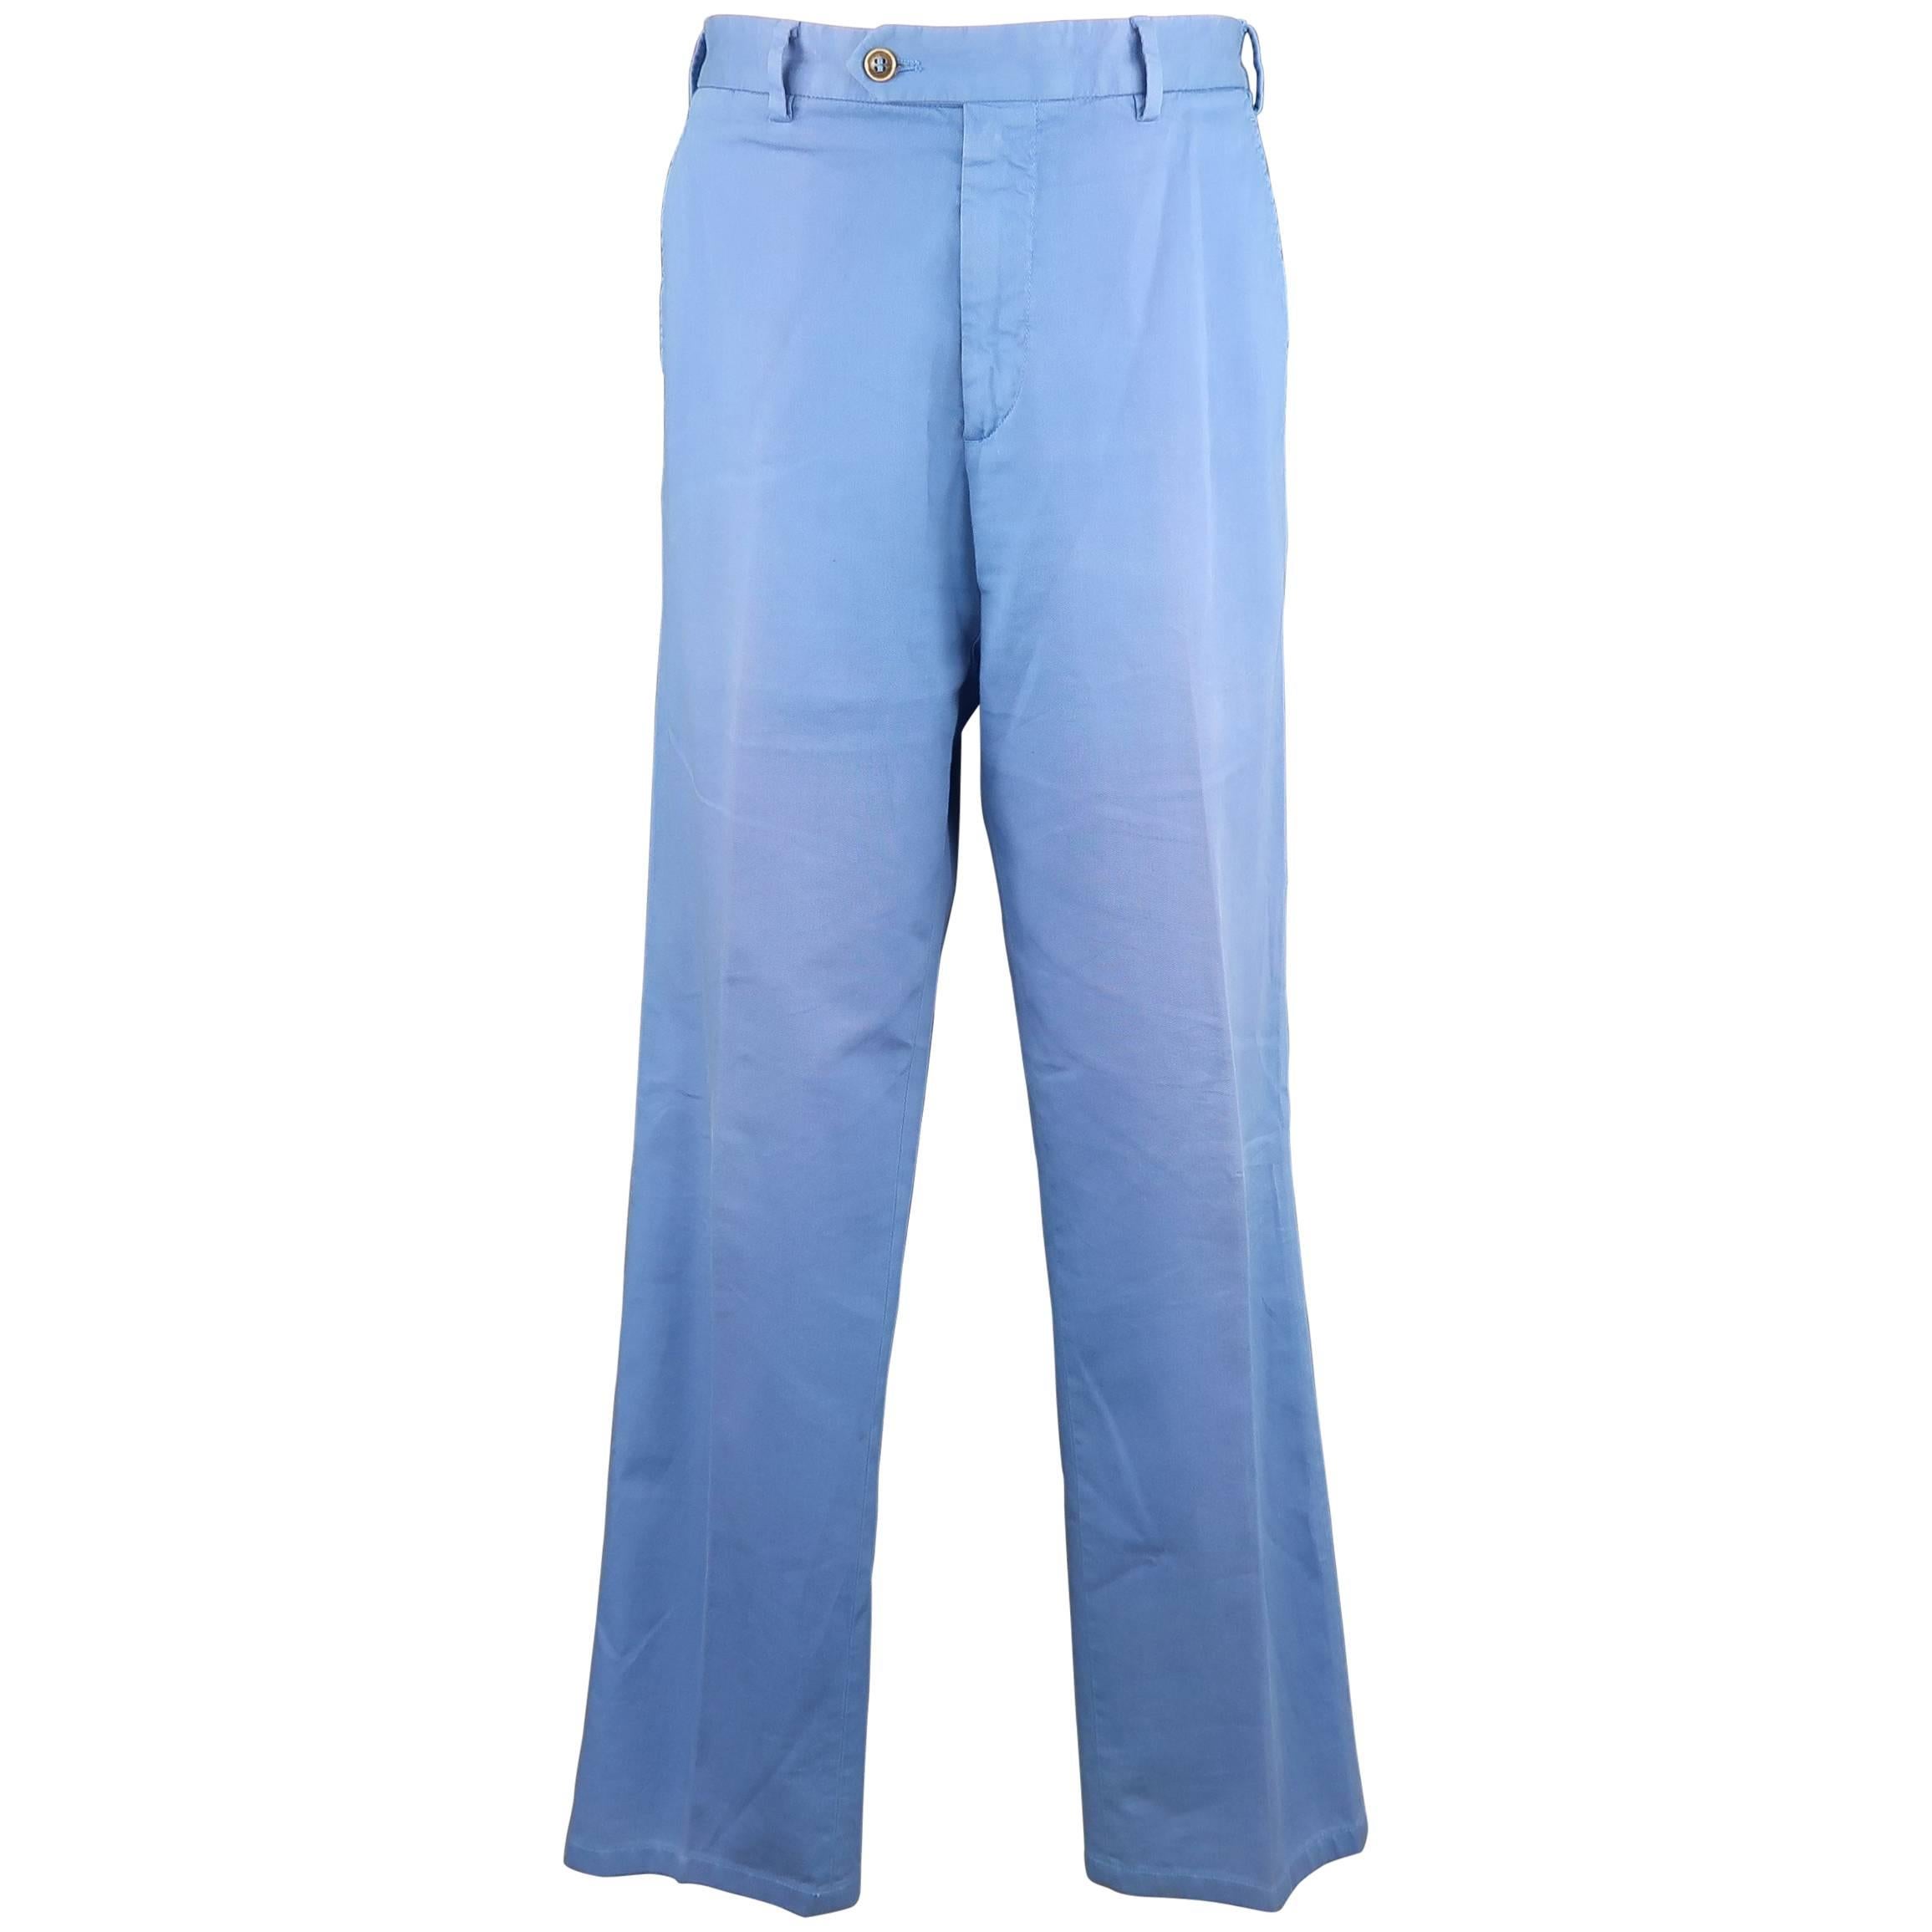 Men's LORO PIANA Size 34 Washed Blue Cotton Chino Pants